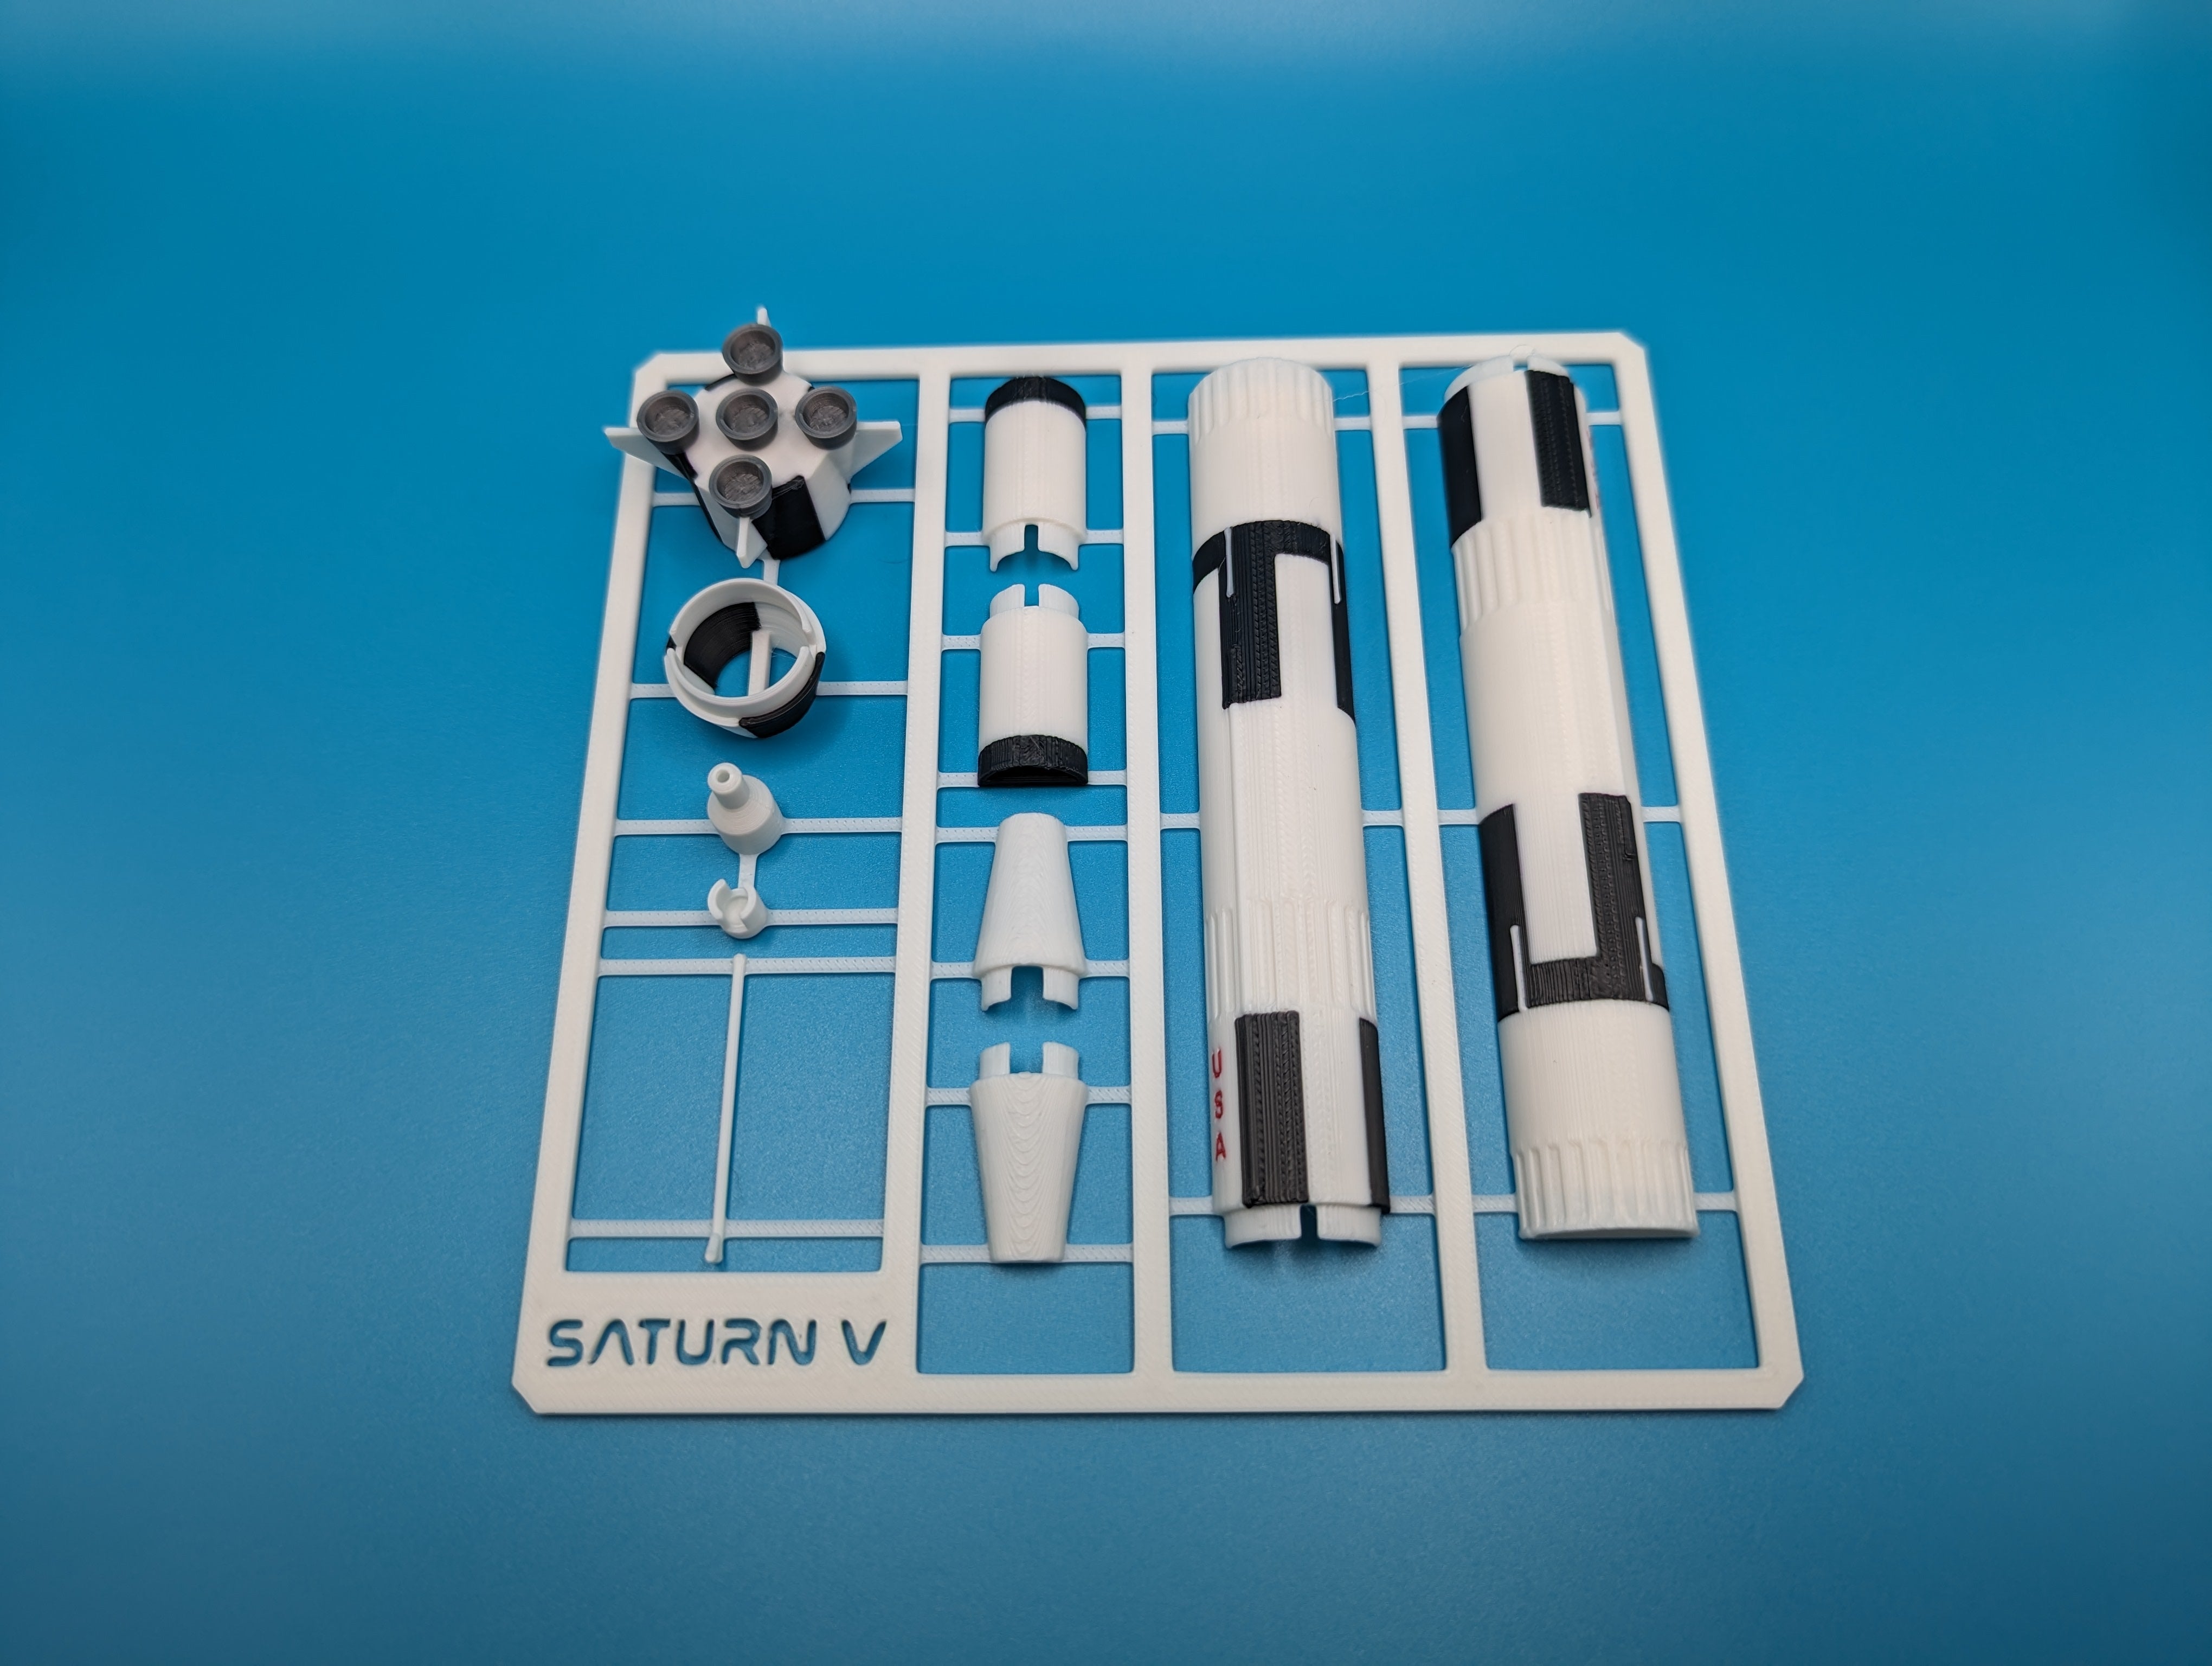 Miniaturowy model rakiety NASA Saturn V